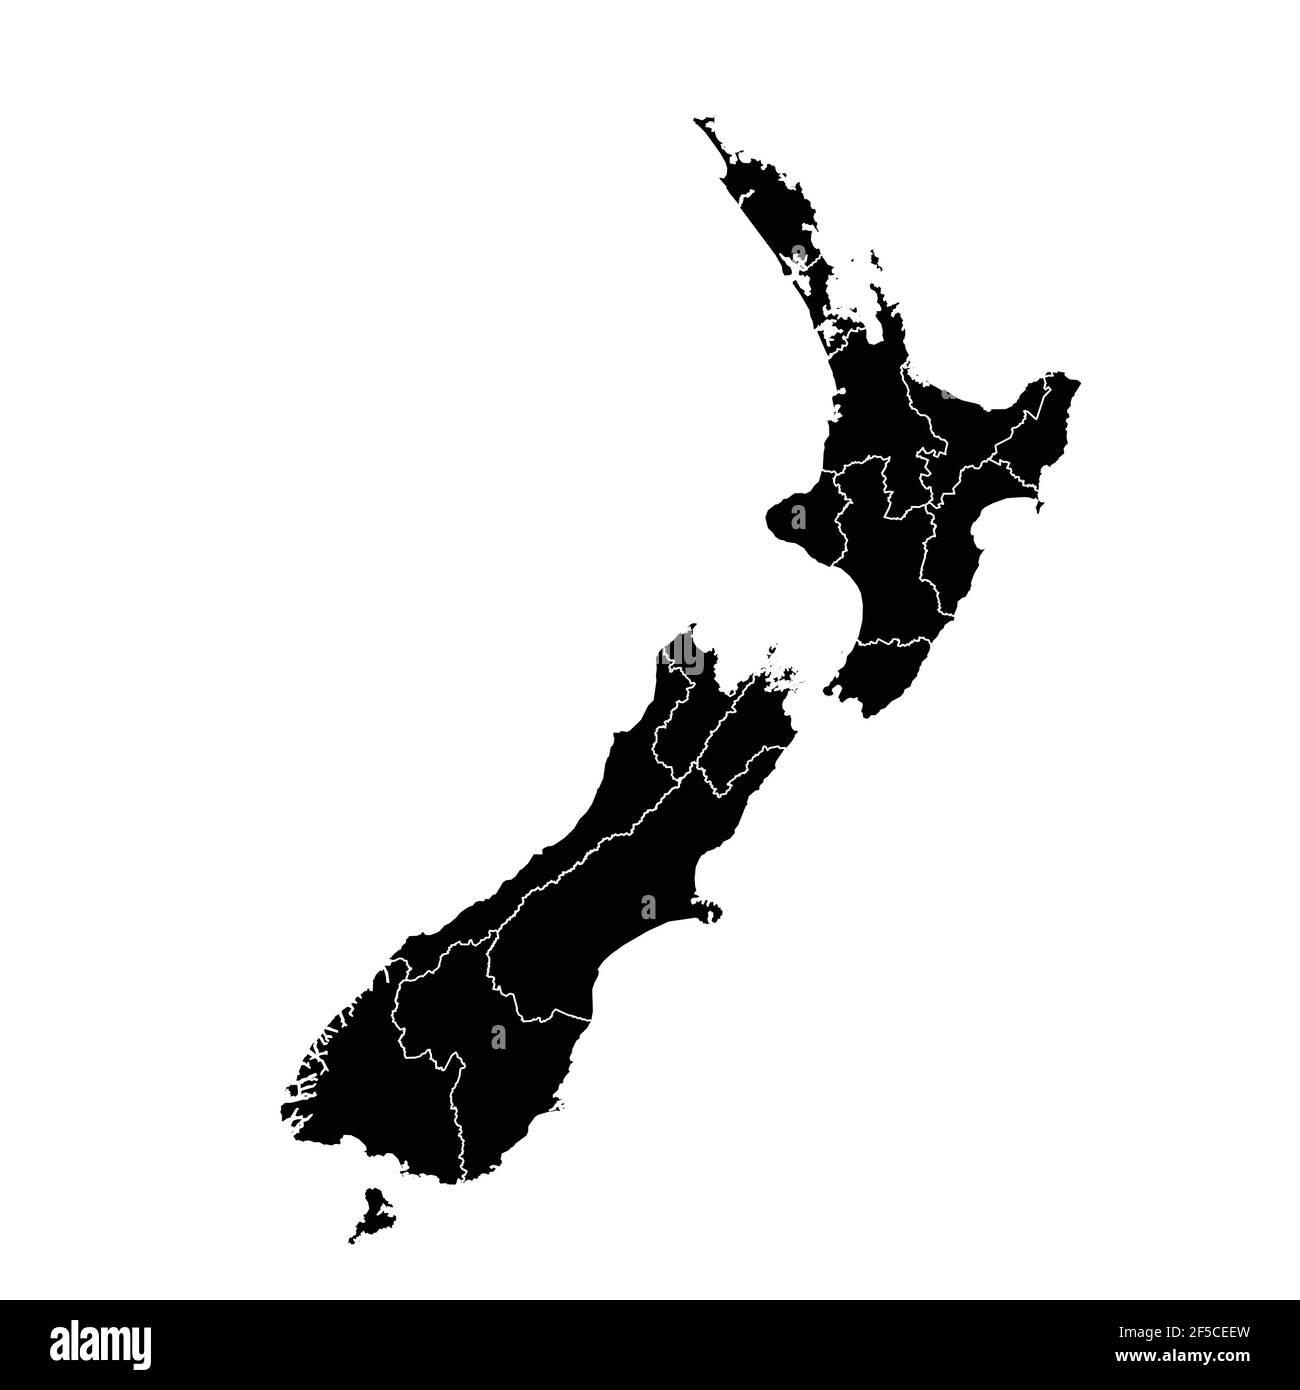 Vecteur de carte de pays de la Nouvelle-Zélande avec zones régionales Illustration de Vecteur